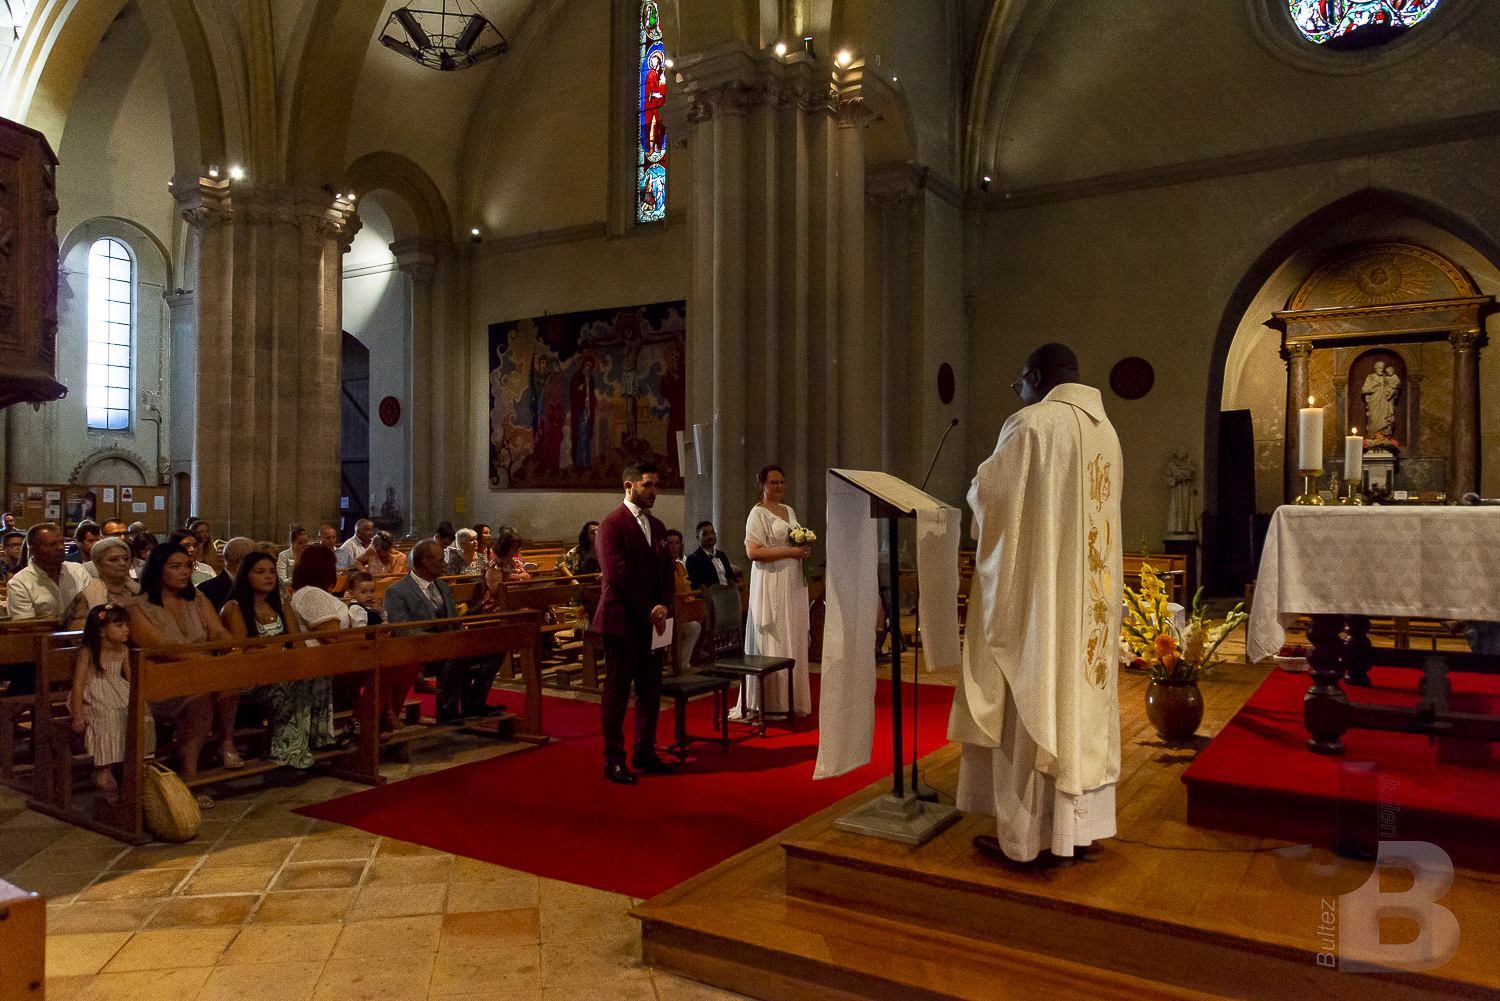 Le samedi 30 juillet, a l'église St Sauveur de Castelsarrasin (82 - Tarn-et-Garonne), c'est déroulé le mariage religieux entre M. Julien B. et Mme Charlyne B. Copyright : Julien Bultez Prod. 